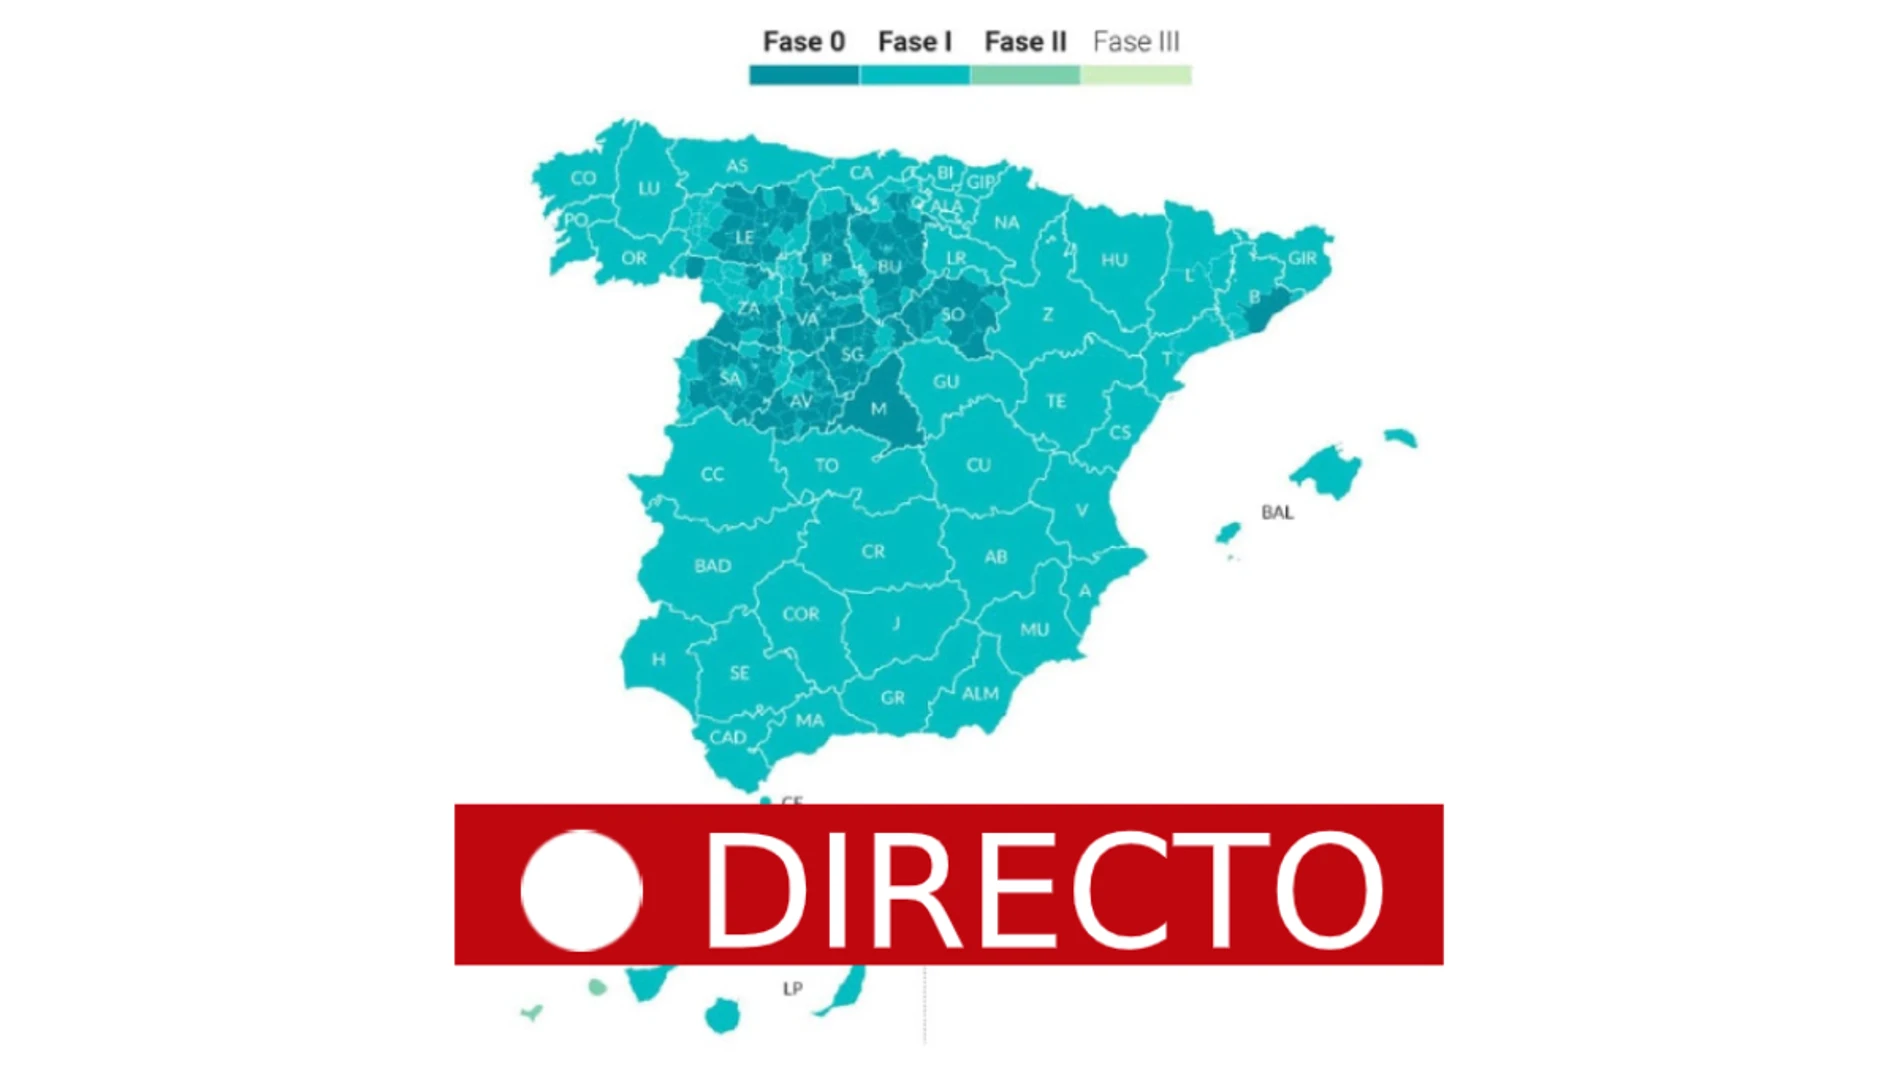 Fase 1 del coronavirus en España: Madrid, parte de Barcelona y Castilla y León en fase 0, en directo